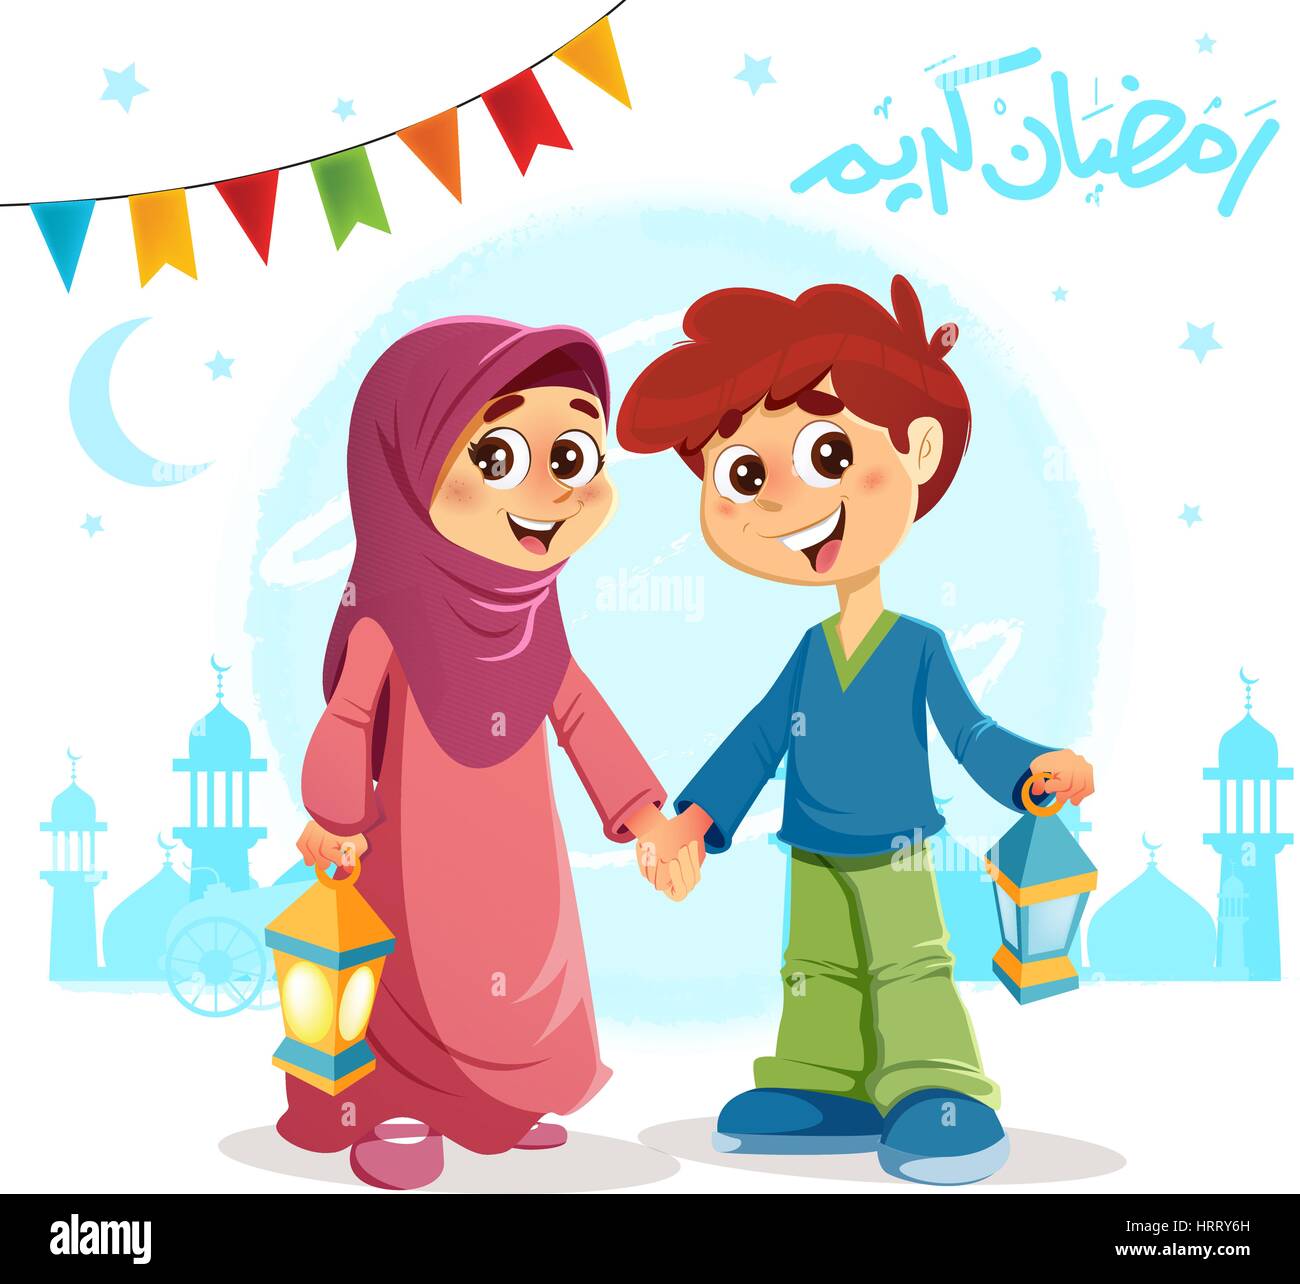 Ilustración vectorial de chico y chica musulmana celebra el Ramadán, con 'feliz Ramadán' texto escrito en árabe Ilustración del Vector